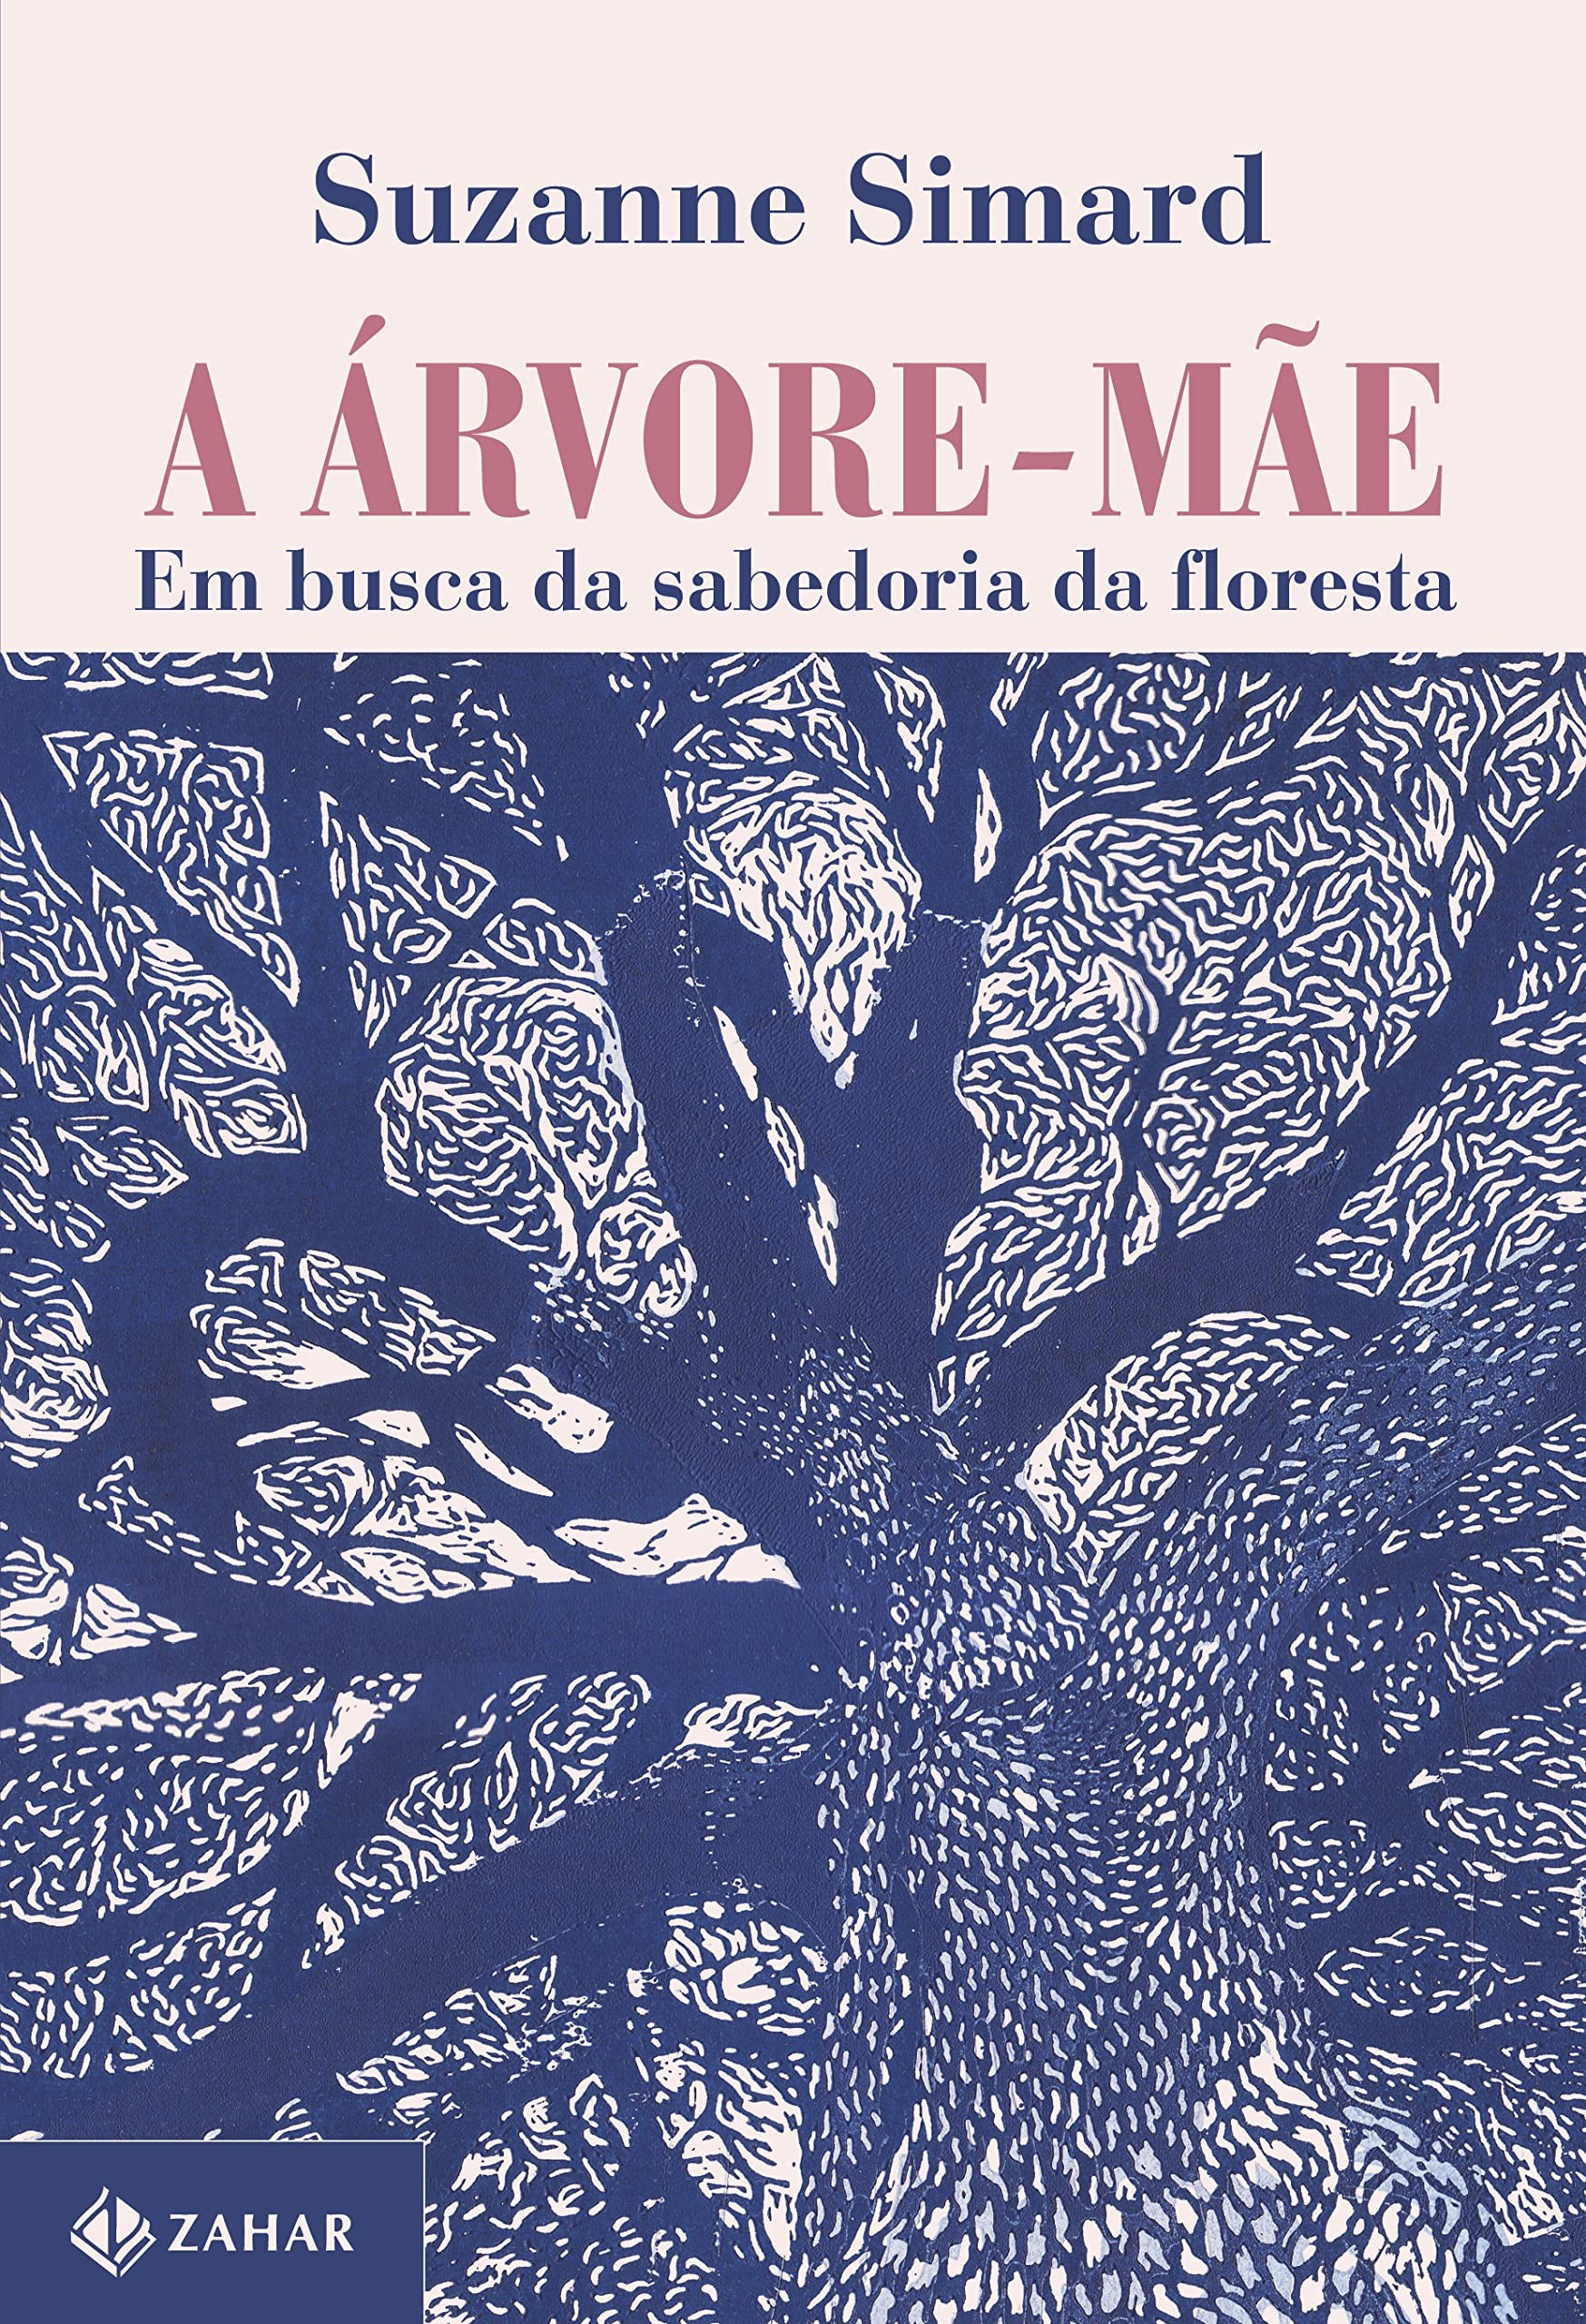 A árvore-mãe: em busca da sabedoria da floresta, de Suzanne Simard (Zahar, 408 páginas • Impresso: R$ 109,90 | E-book: R$ 44,90) (Foto: Divulgação)